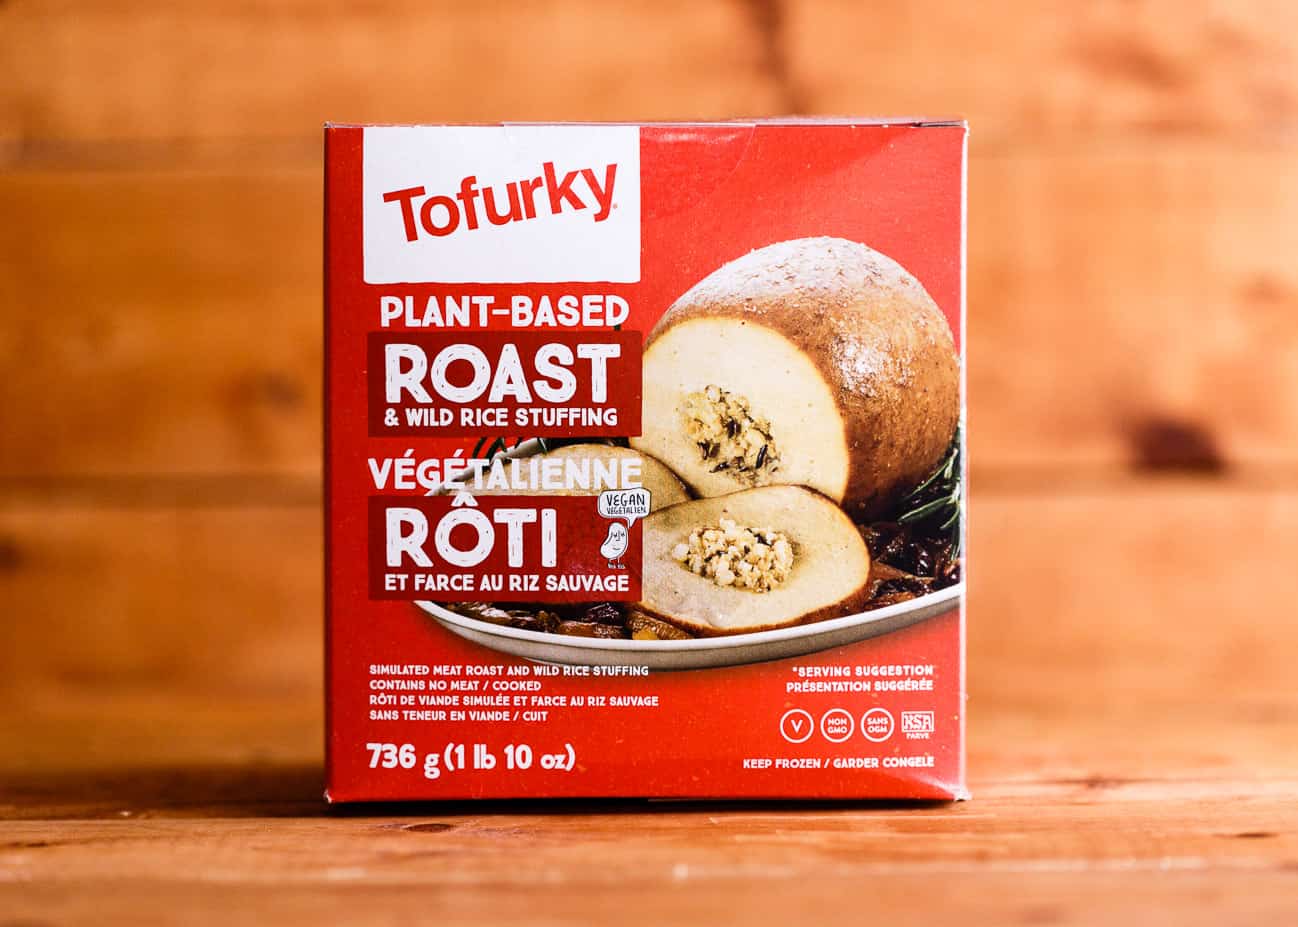 Tofurky roast in packaging.